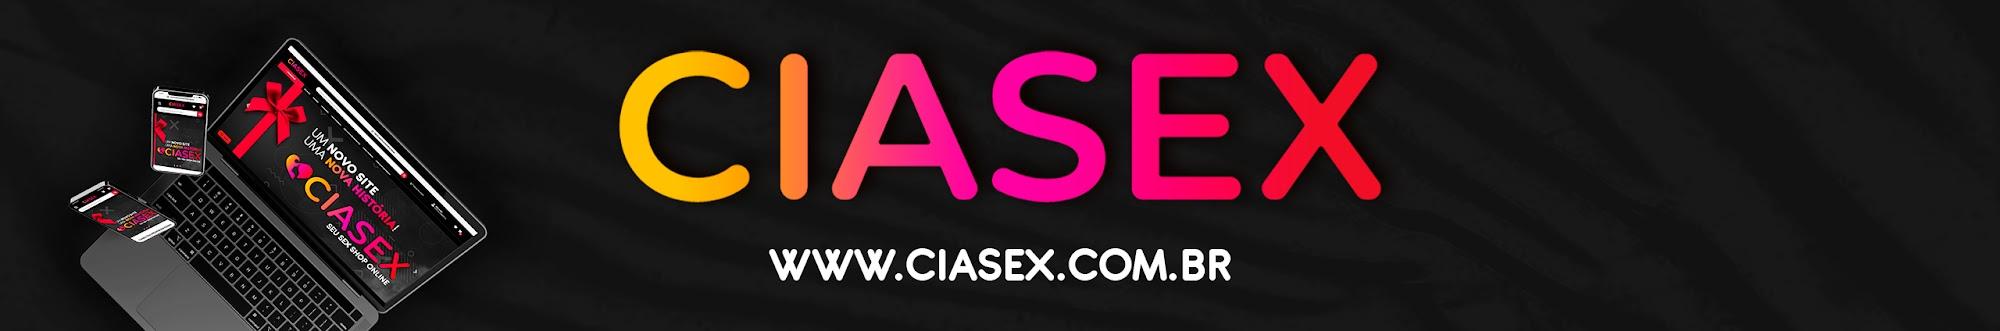 CiaSex